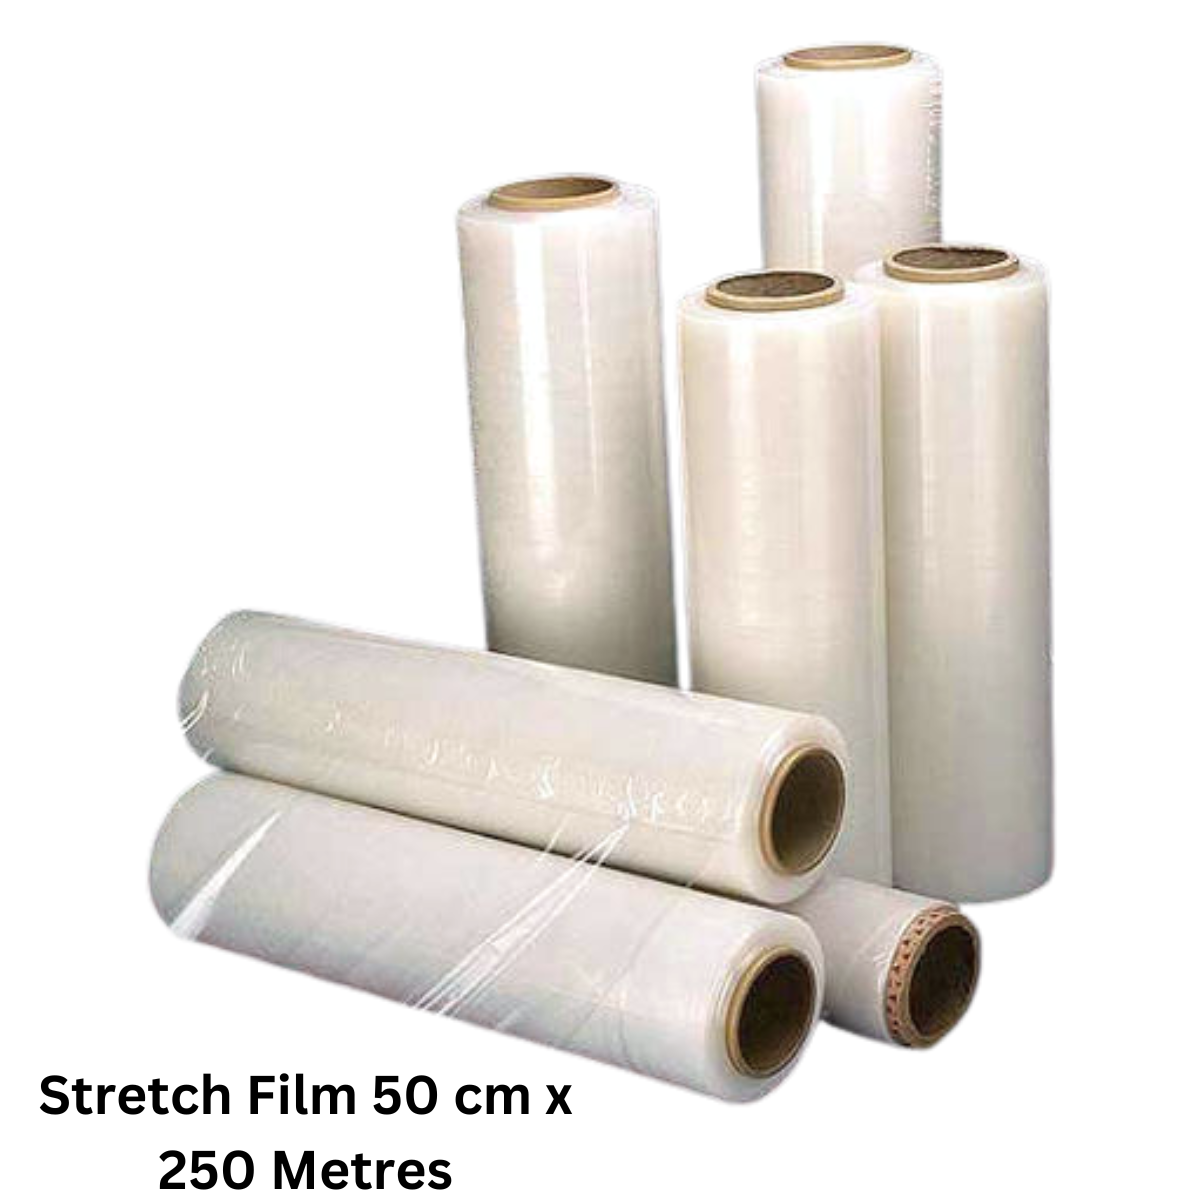 Buy Stretch Film 50 cm x 250 Metres In Qatar